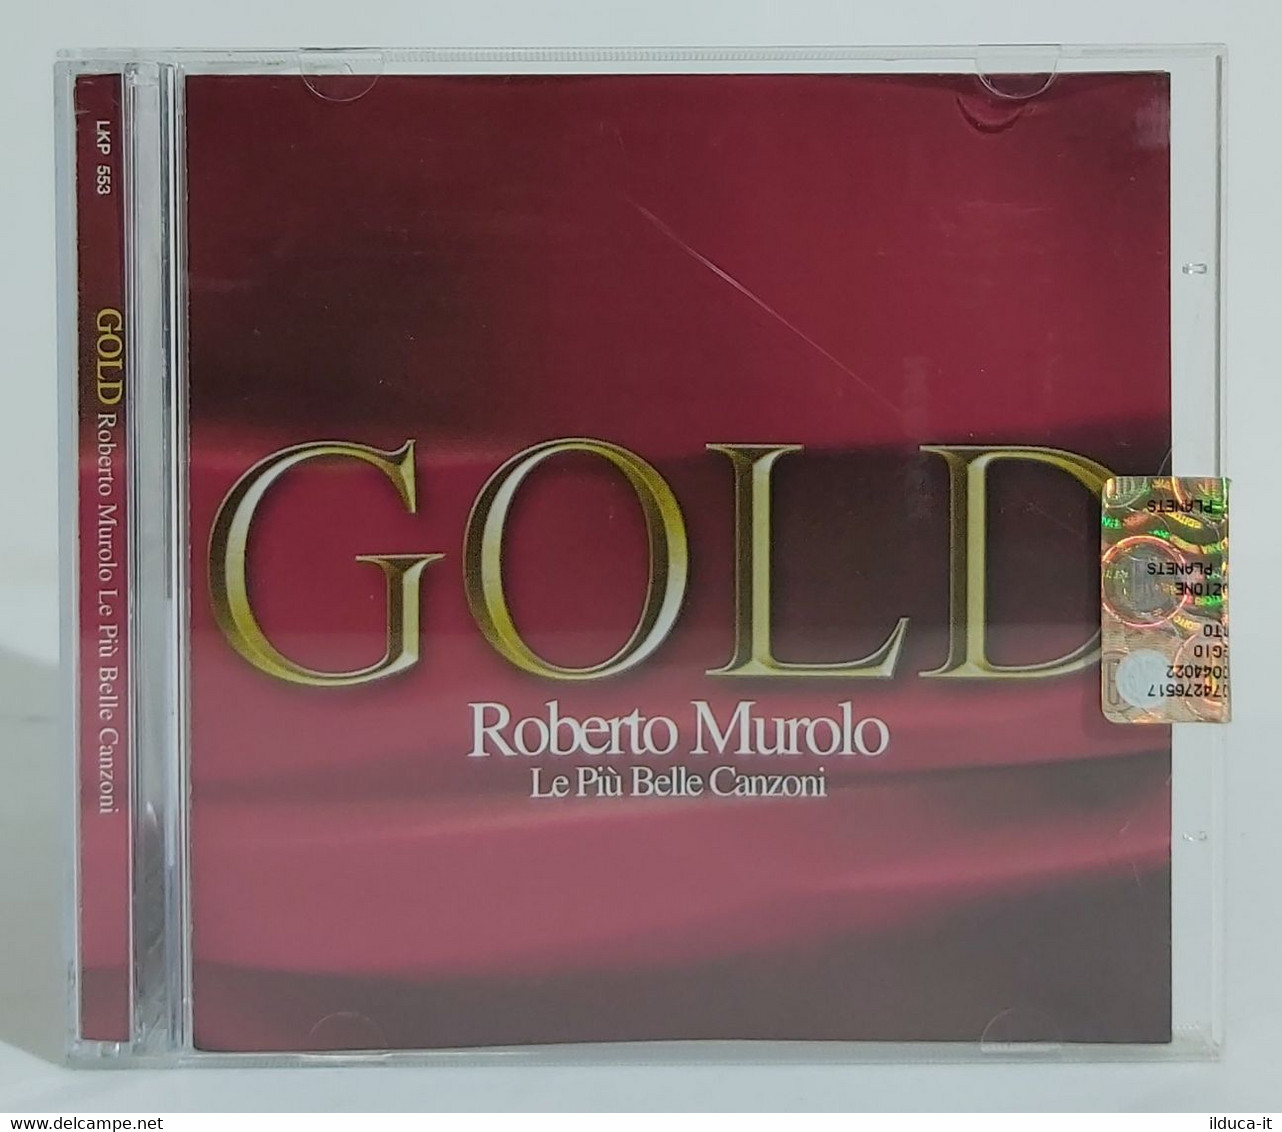 I102306 CD - Roberto Murolo - Gold Le Più Belle Canzoni - Musicali Festa 2005 - Sonstige - Italienische Musik